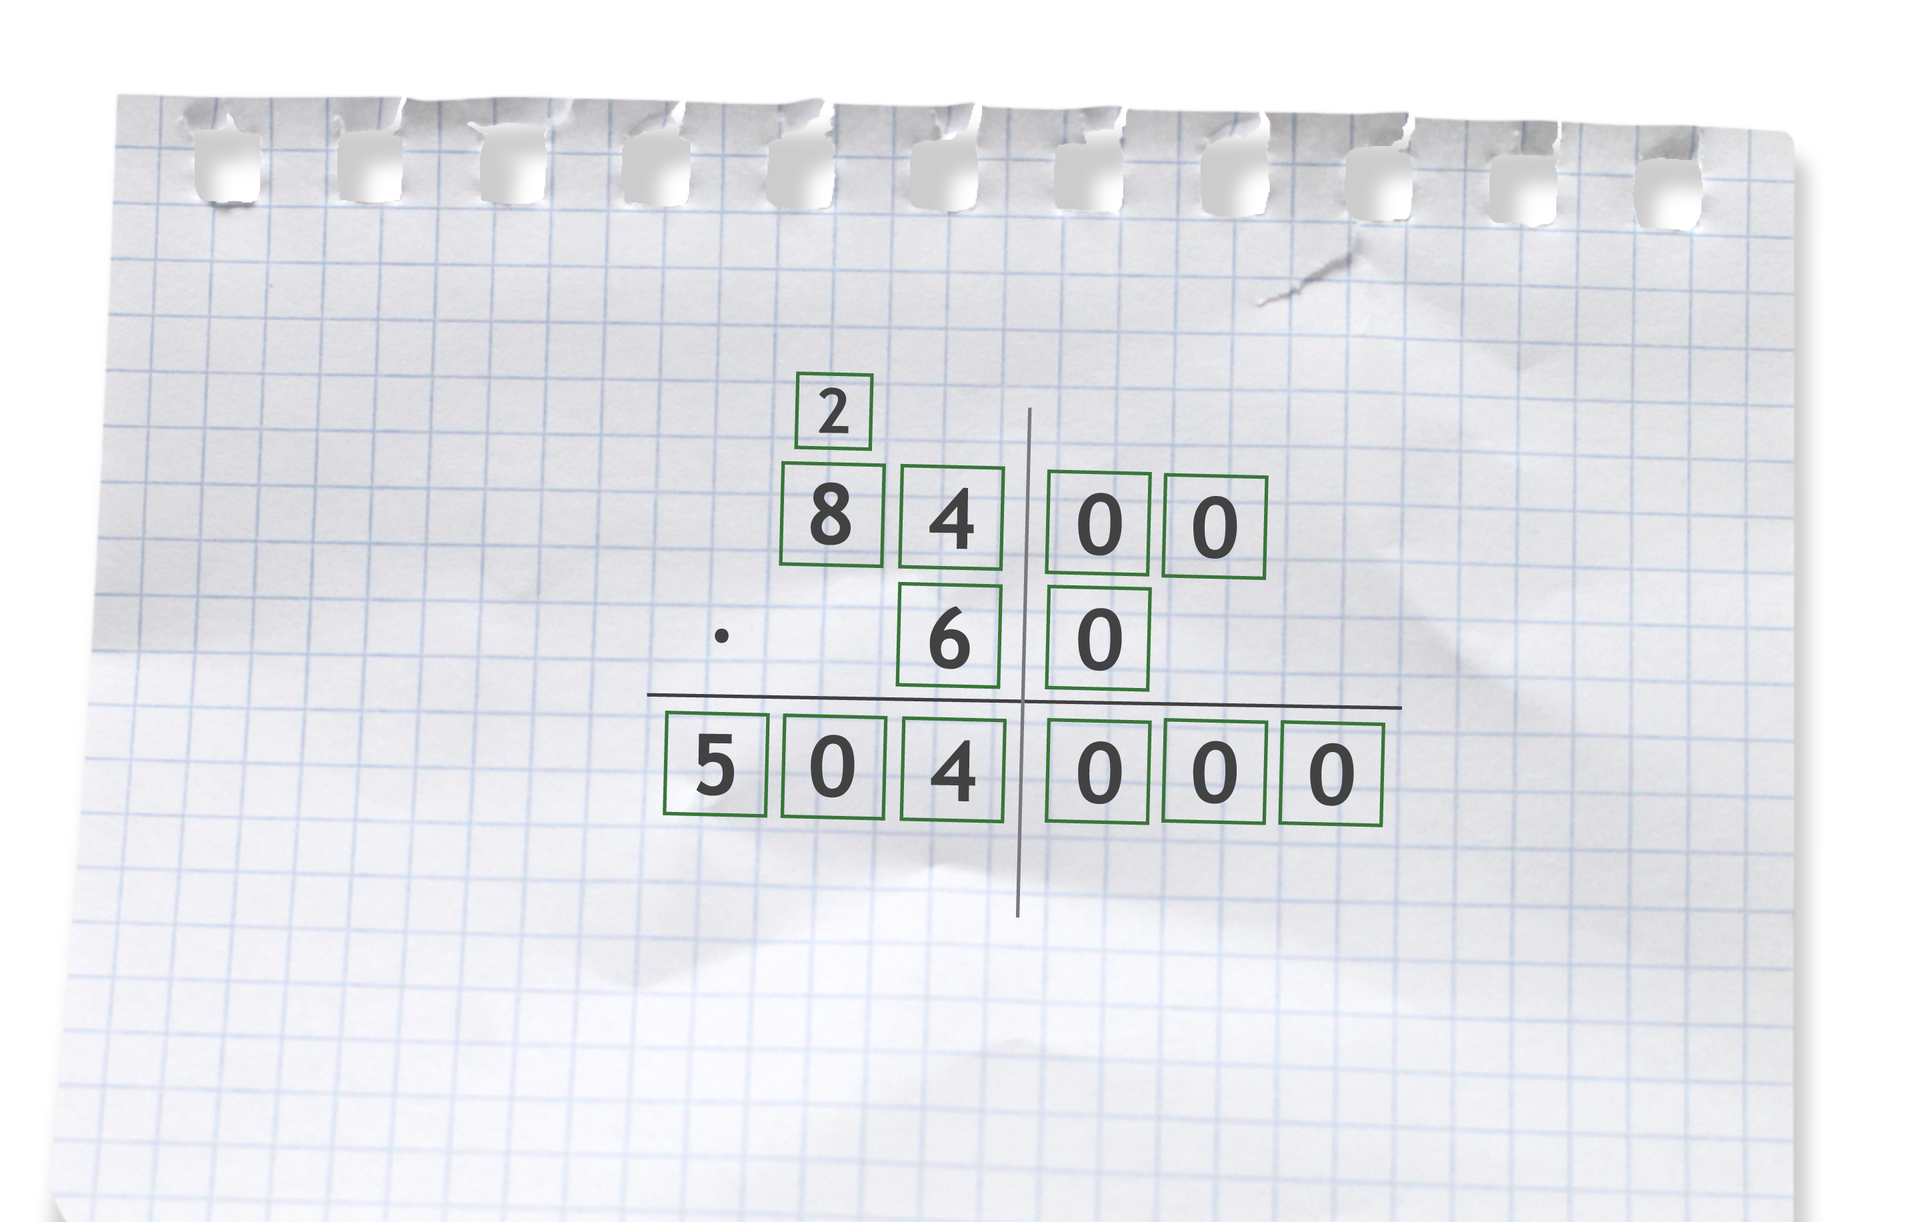 Na kartce w kratkę zapisano liczbę osiem tysięcy czterysta tak, że każda cyfra znajduje się w osobny kwadratowym polu. Pod nią zapisano liczbę sześćdziesiąt tak, że każda cyfra znajduje  się w osobnym kwadratowym polu. Poprowadzono pionową prostą oddzielającą zera od innych cyfr naturalnych. Wówczas pod czwórką znajduje się szóstka. Oddzielono dwie liczby poziomą kreską pod którą zapisujemy wynik. W części z samymi zerami zapisano trzy zera pod kreską wynikową, ponieważ nad nią znajdowały się dwa zera pierwszej liczby i jedno drugiej liczby, czyli w sumie było ich trzy. W drugiej części dokonano mnożenia pisemnego mnożą cyfry osiem i cztery przez sześć. Zatem sześć razy cztery równa się dwadzieścia cztery. Cyfrę jedności tej liczby zapisujemy po kreską wynikową po komuną zawierającą czwórkę i szóstkę, a cyfrę dziesiątek liczby dwadzieścia cztery piszemy na ósemką. Następnie mnożymy sześć razy osiem daje nam czterdzieści osiem plus sześć równa się pięćdziesiąt co zapisujemy pod kreską wynikową. Wówczas wynikiem jest liczba pięćset cztery tysiące. Każda cyfra zapisana jest w osobnym kwadratowym polu.